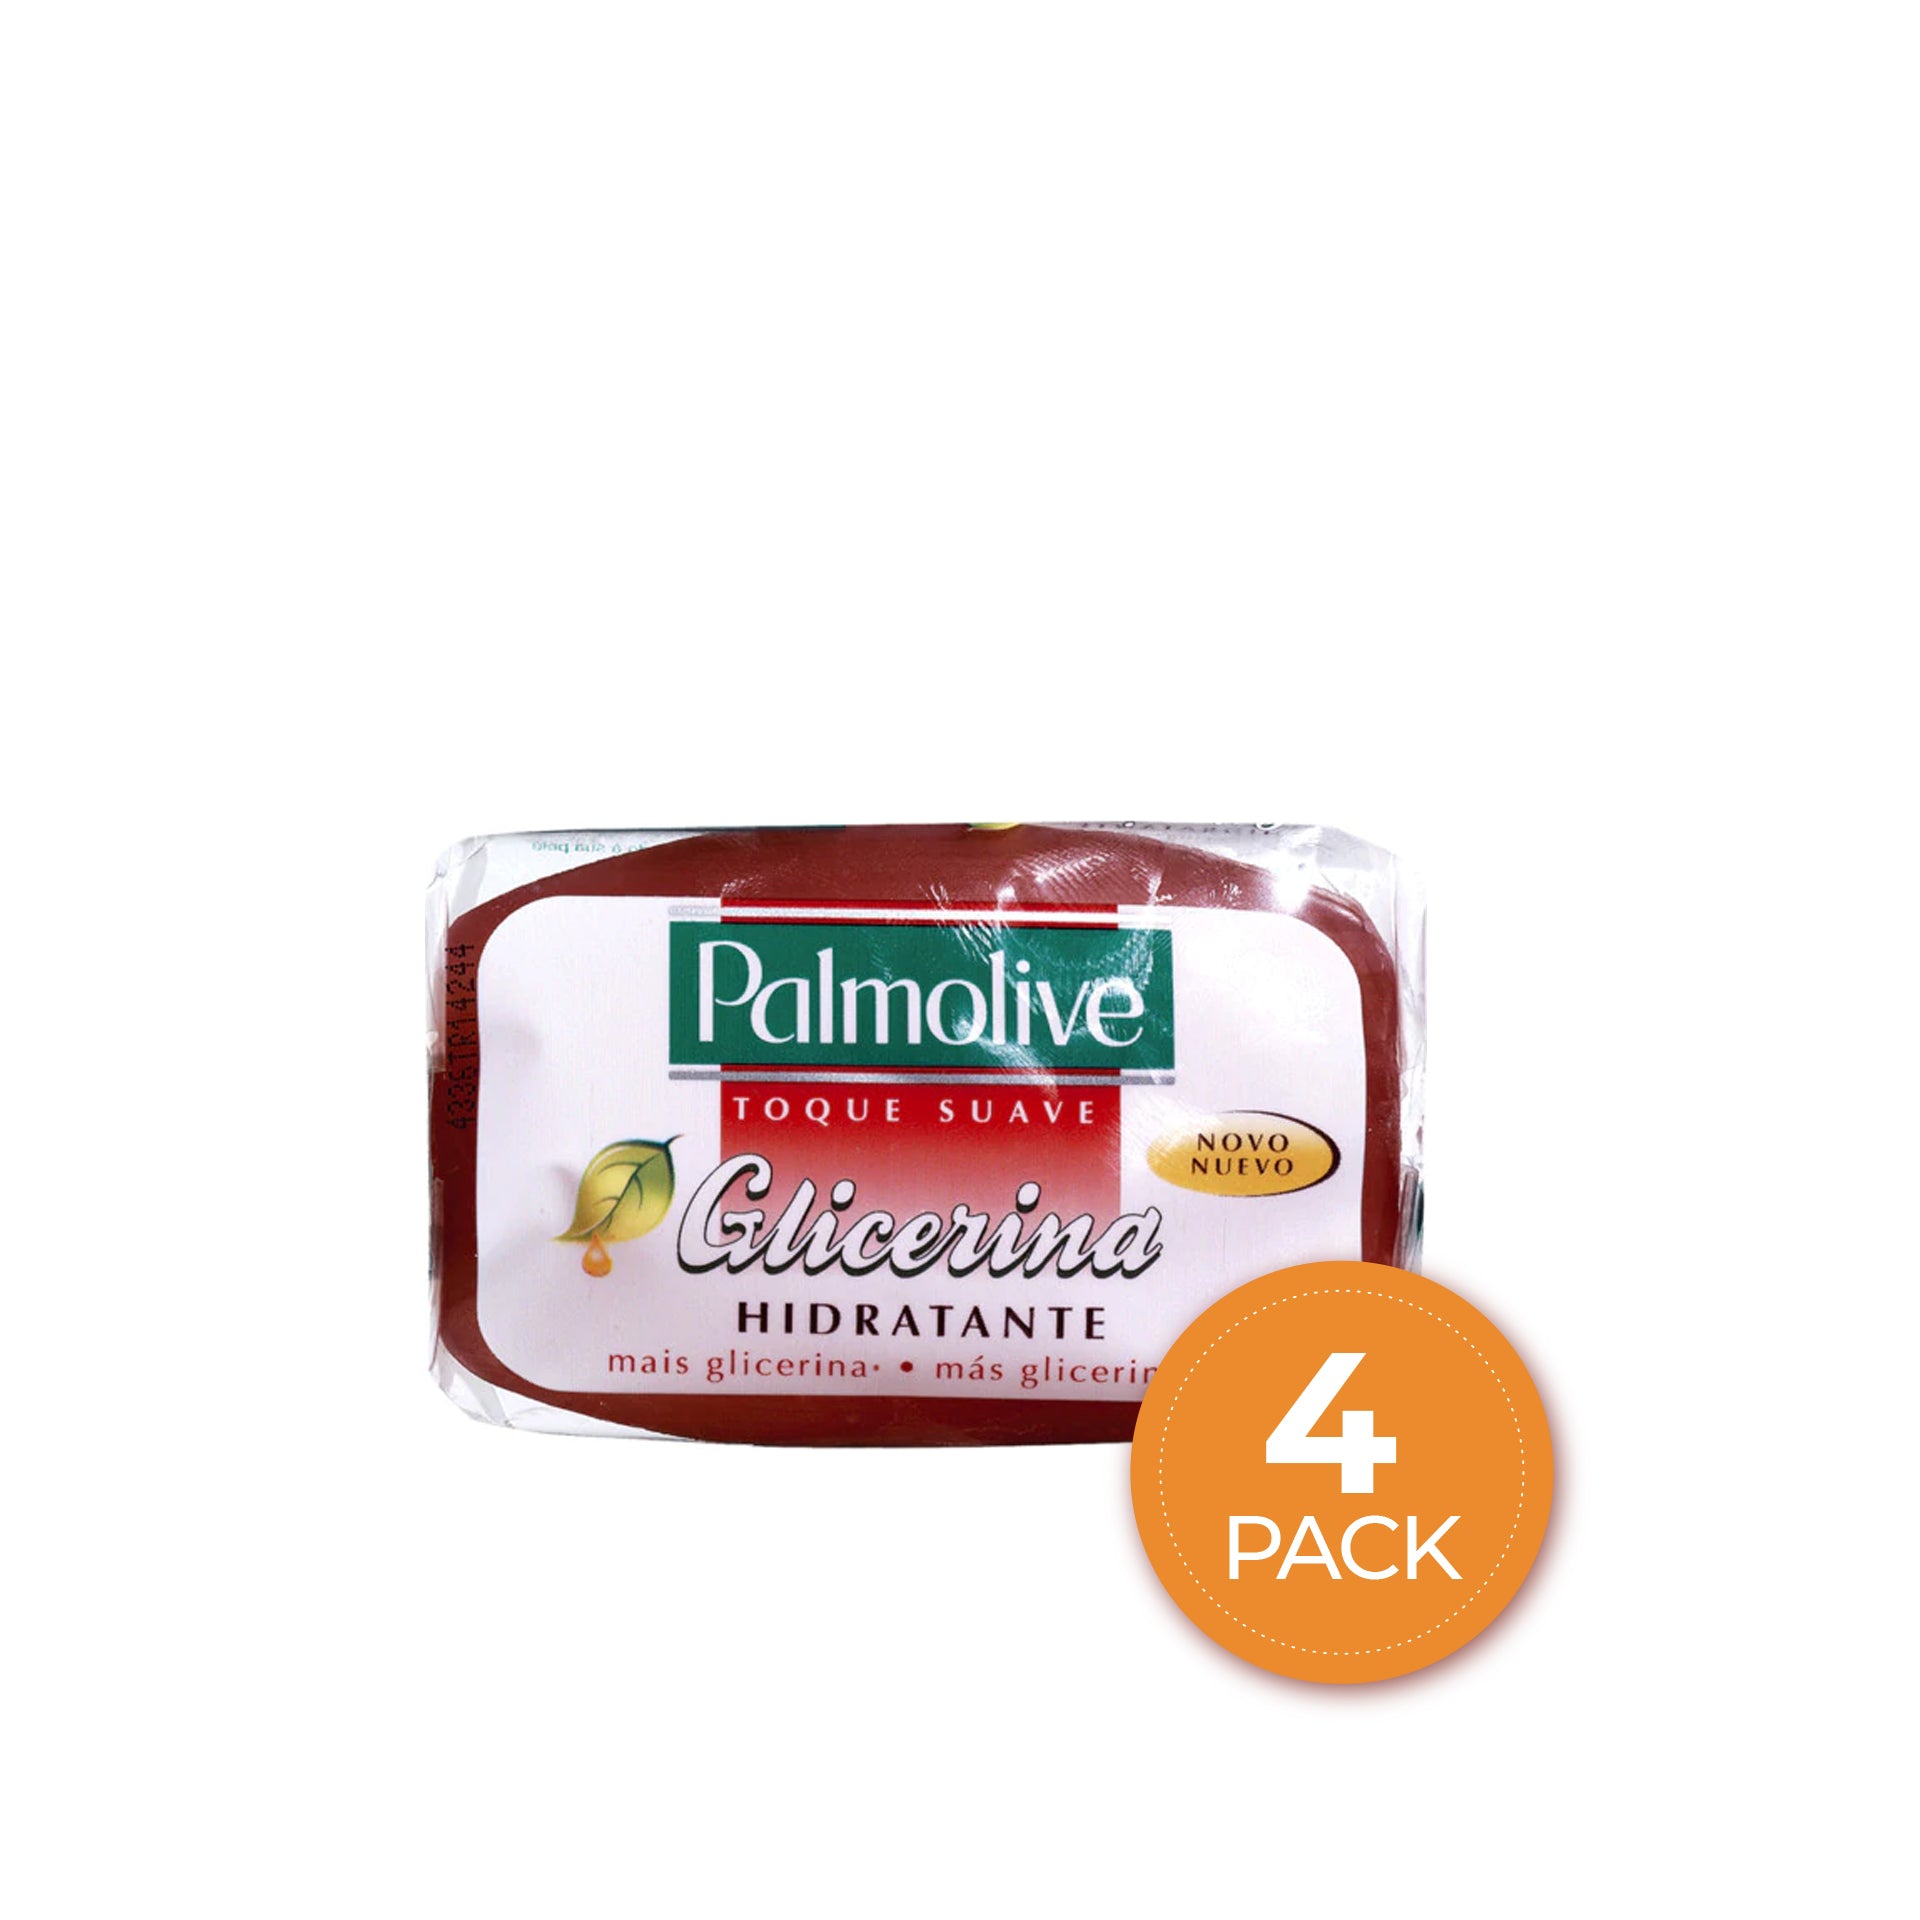 Palmolive Toque Suave Sabonete de Glicerina Hidratante 90 g - Pack 4 x 90 g